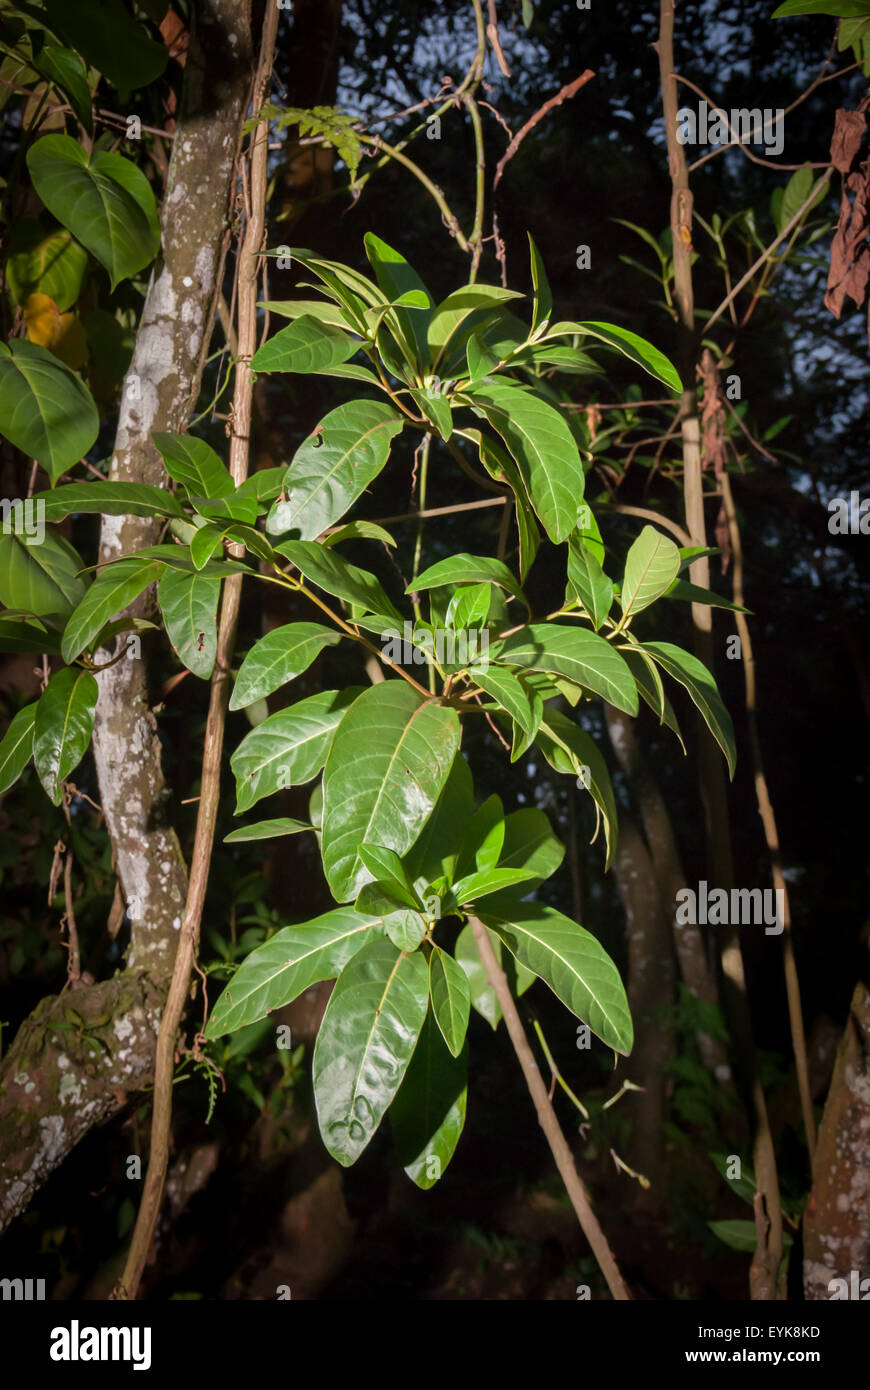 Blätter einer nicht identifizierten Chinin-Art (Cinchona) in Lembang, West Bandung, West Java, Indonesien. Chinin wird häufig zur Behandlung von Malaria verwendet. Stockfoto